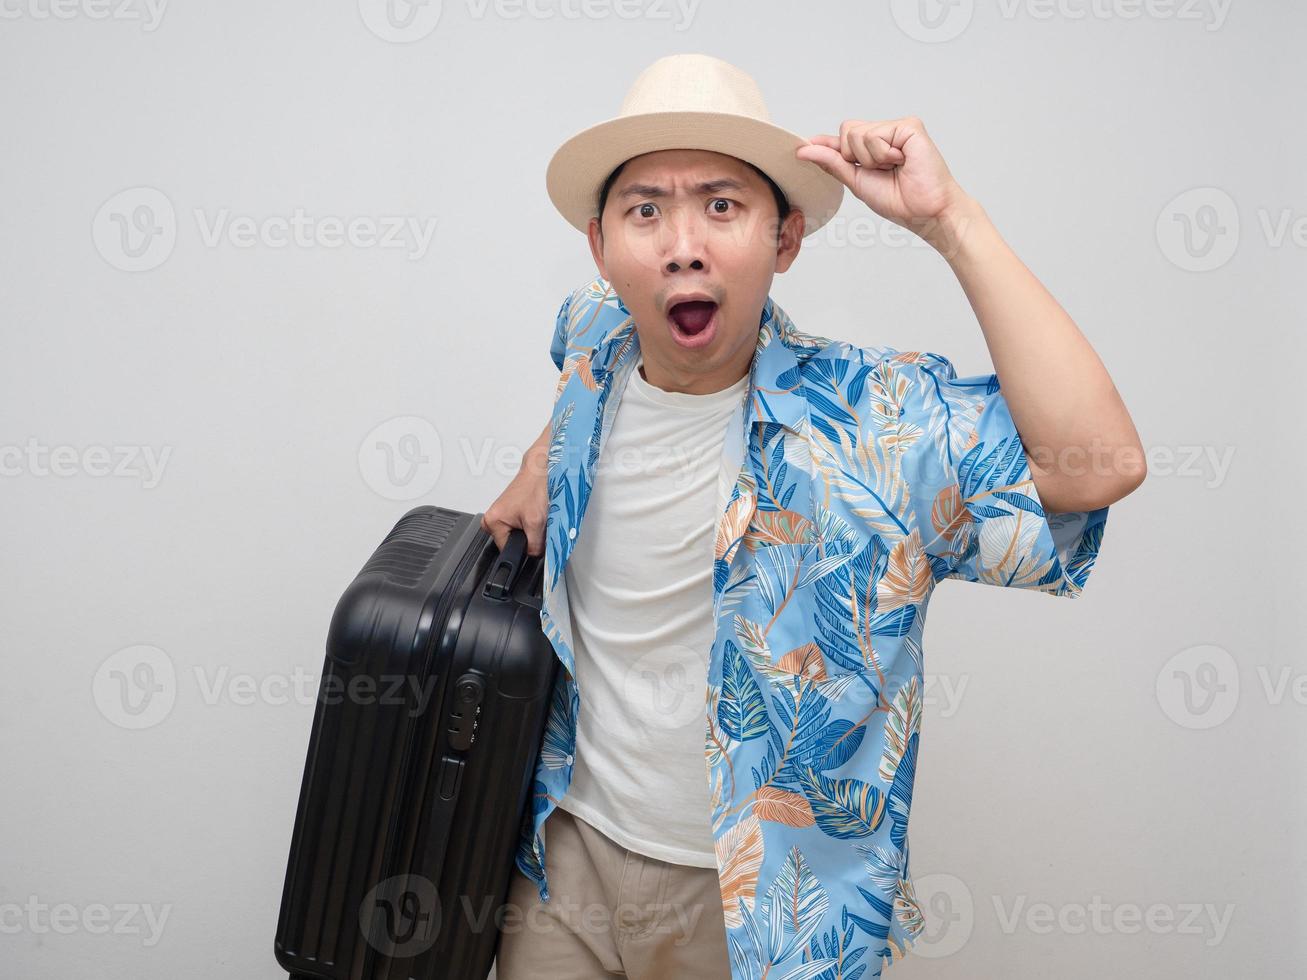 turism man ha på sig hatt bära bagage gest förvånad med Semester foto